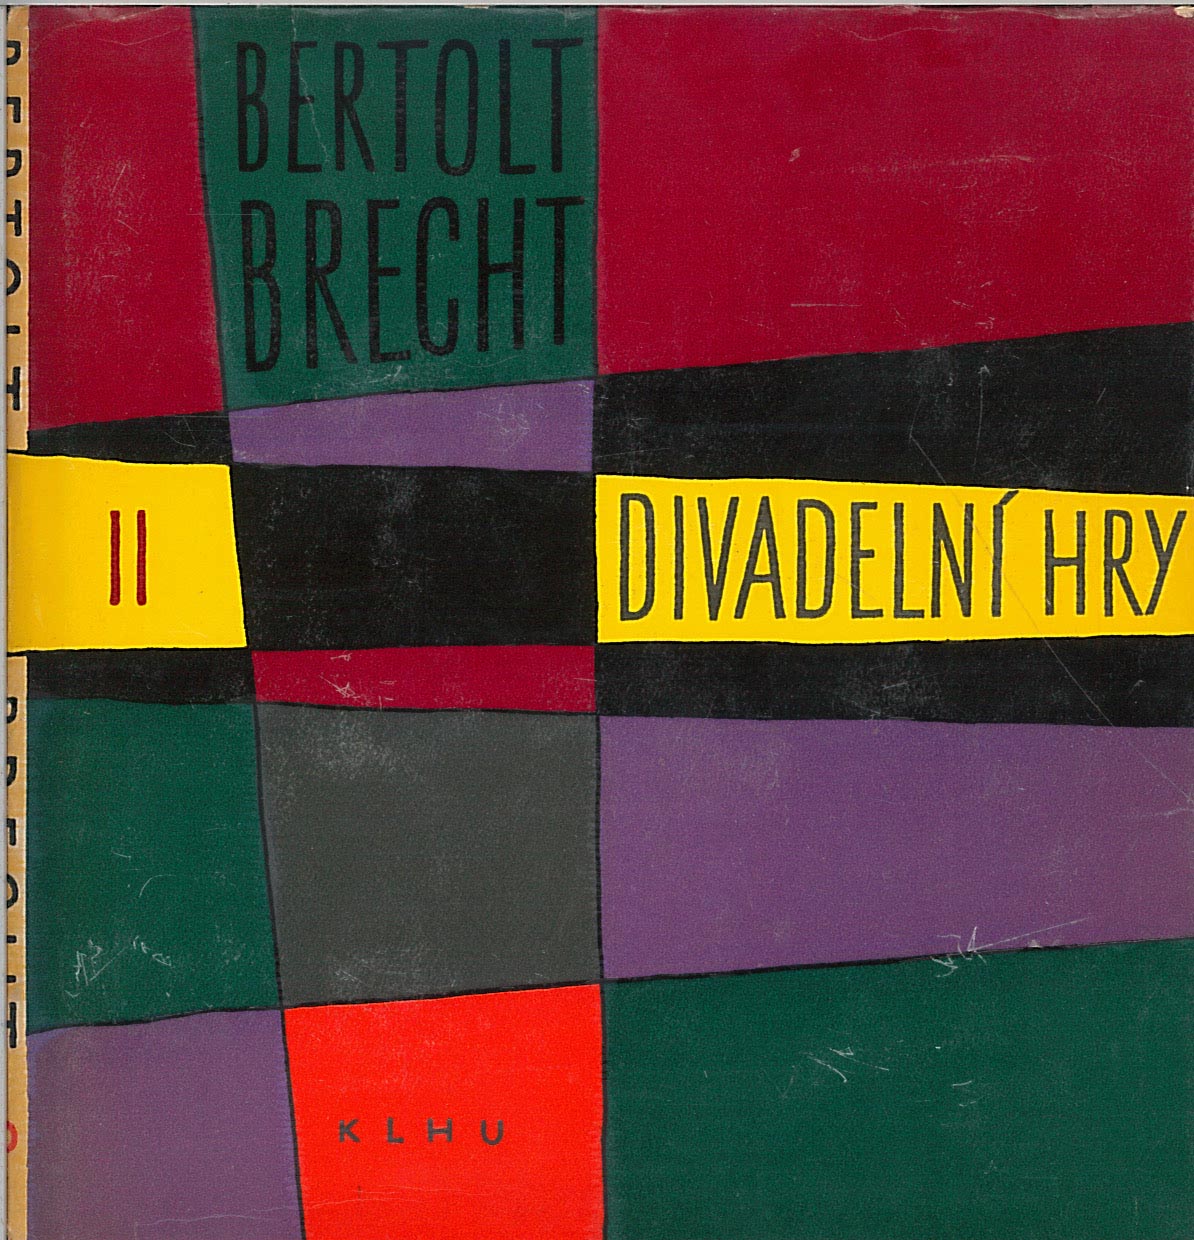 Divadelní hry II. (Bertolt Brecht)